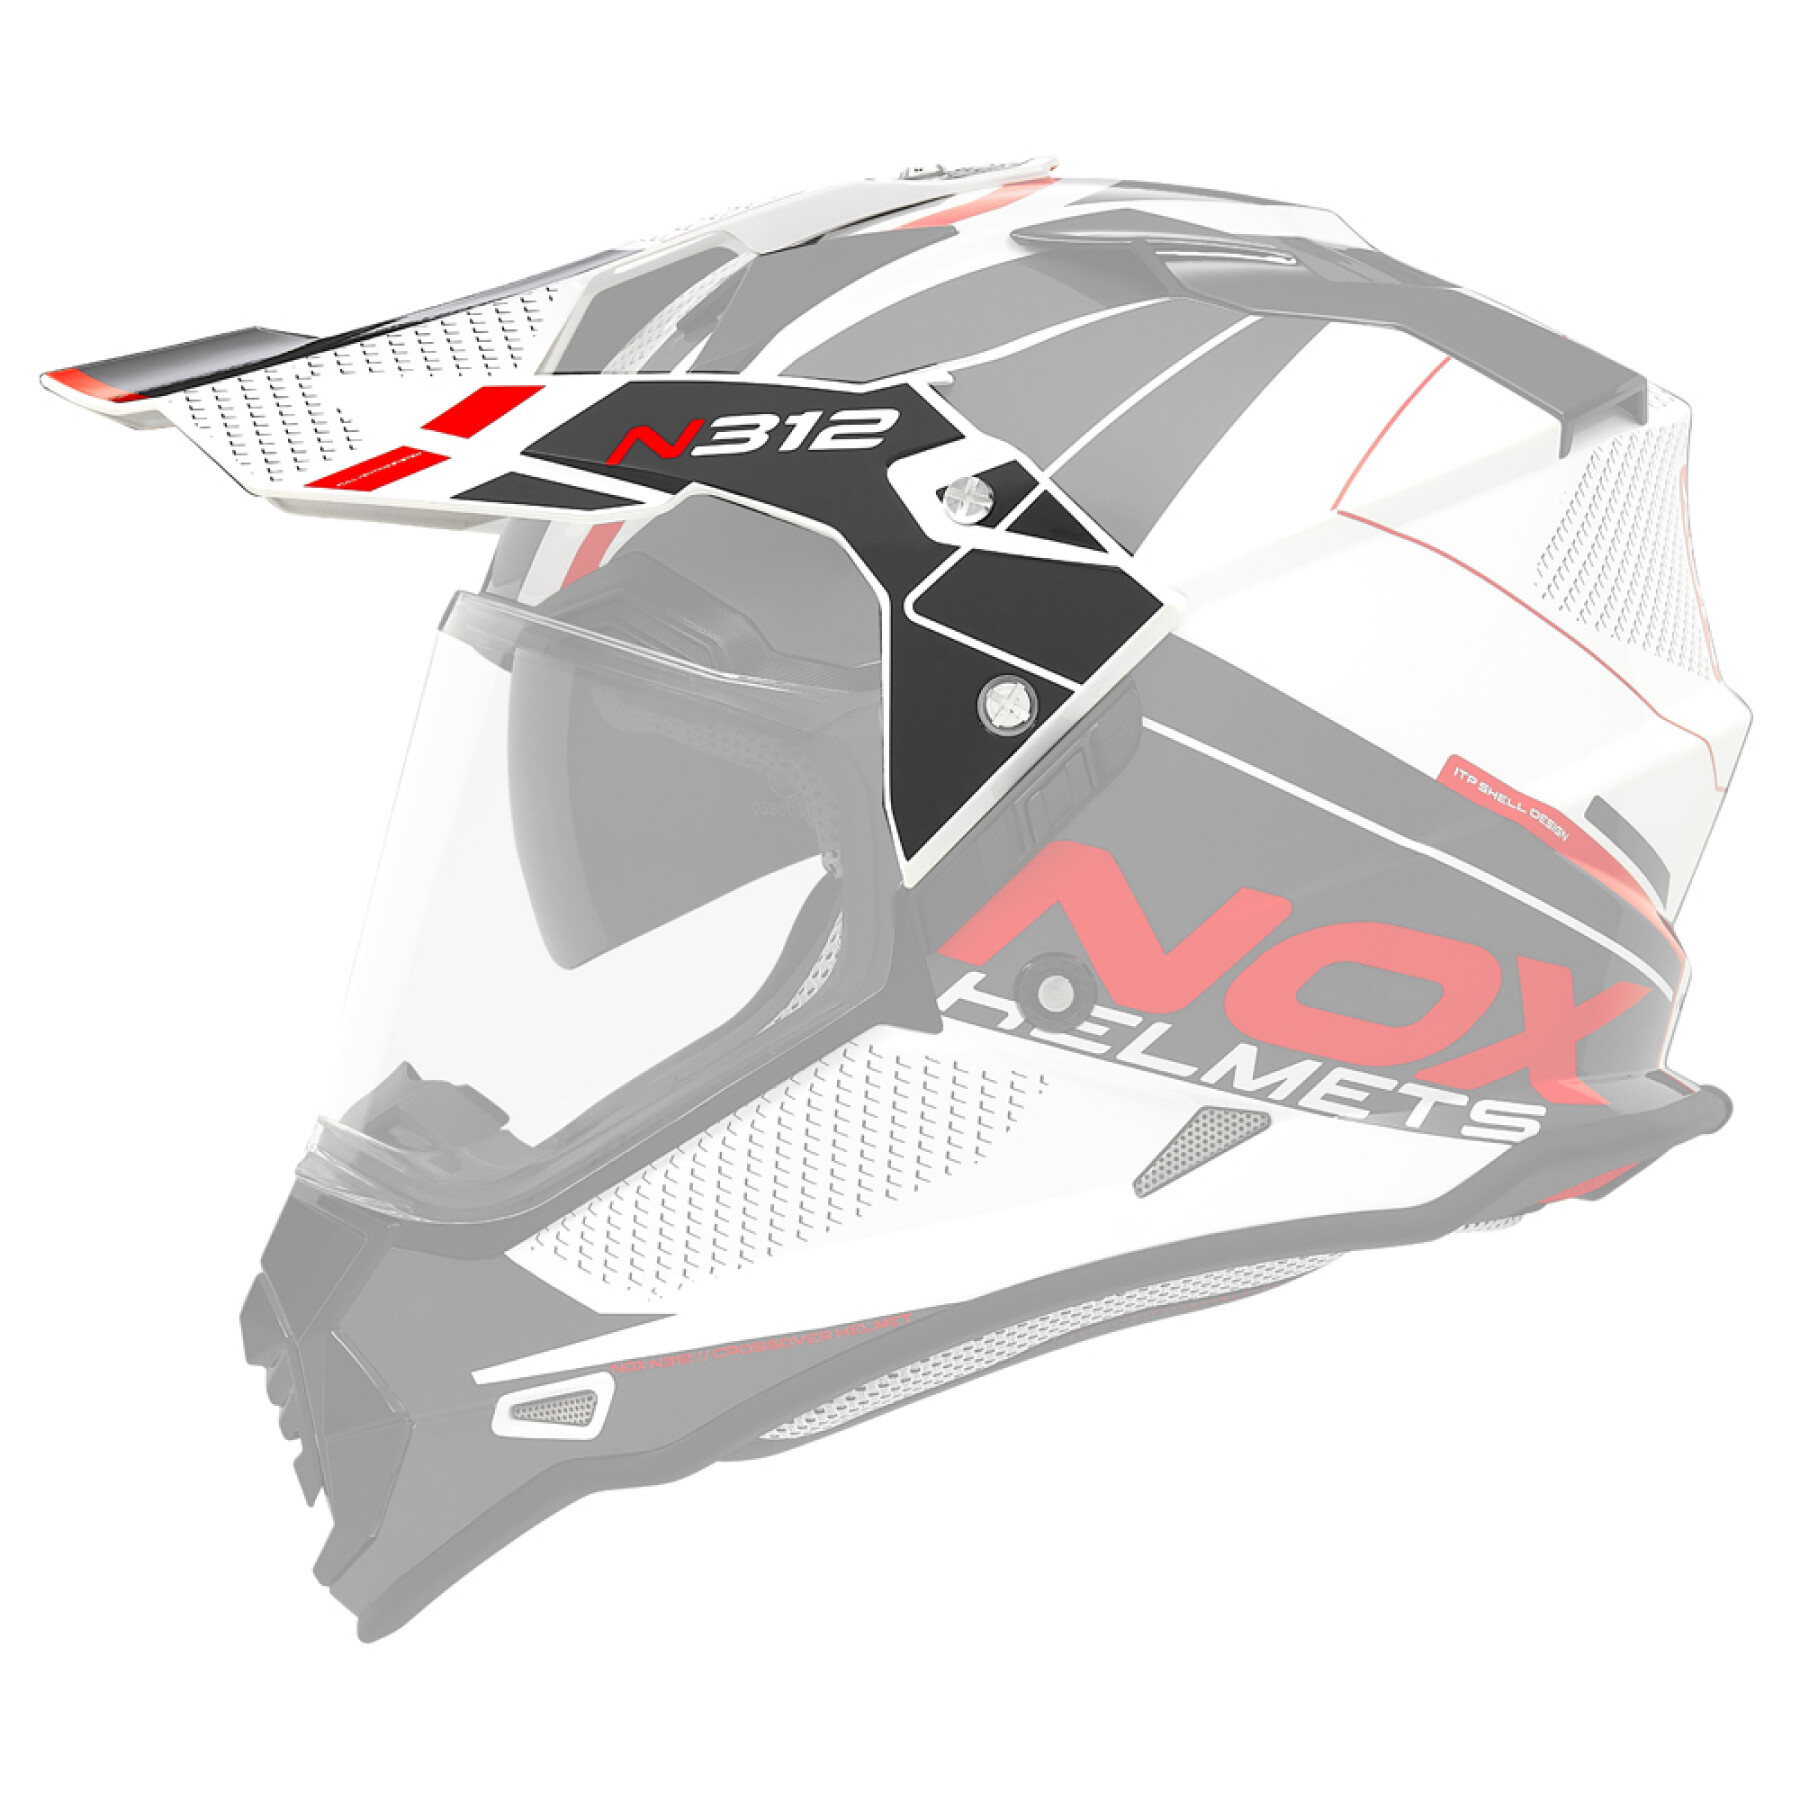 Visiera per casco da motocross Nox 312 Drone